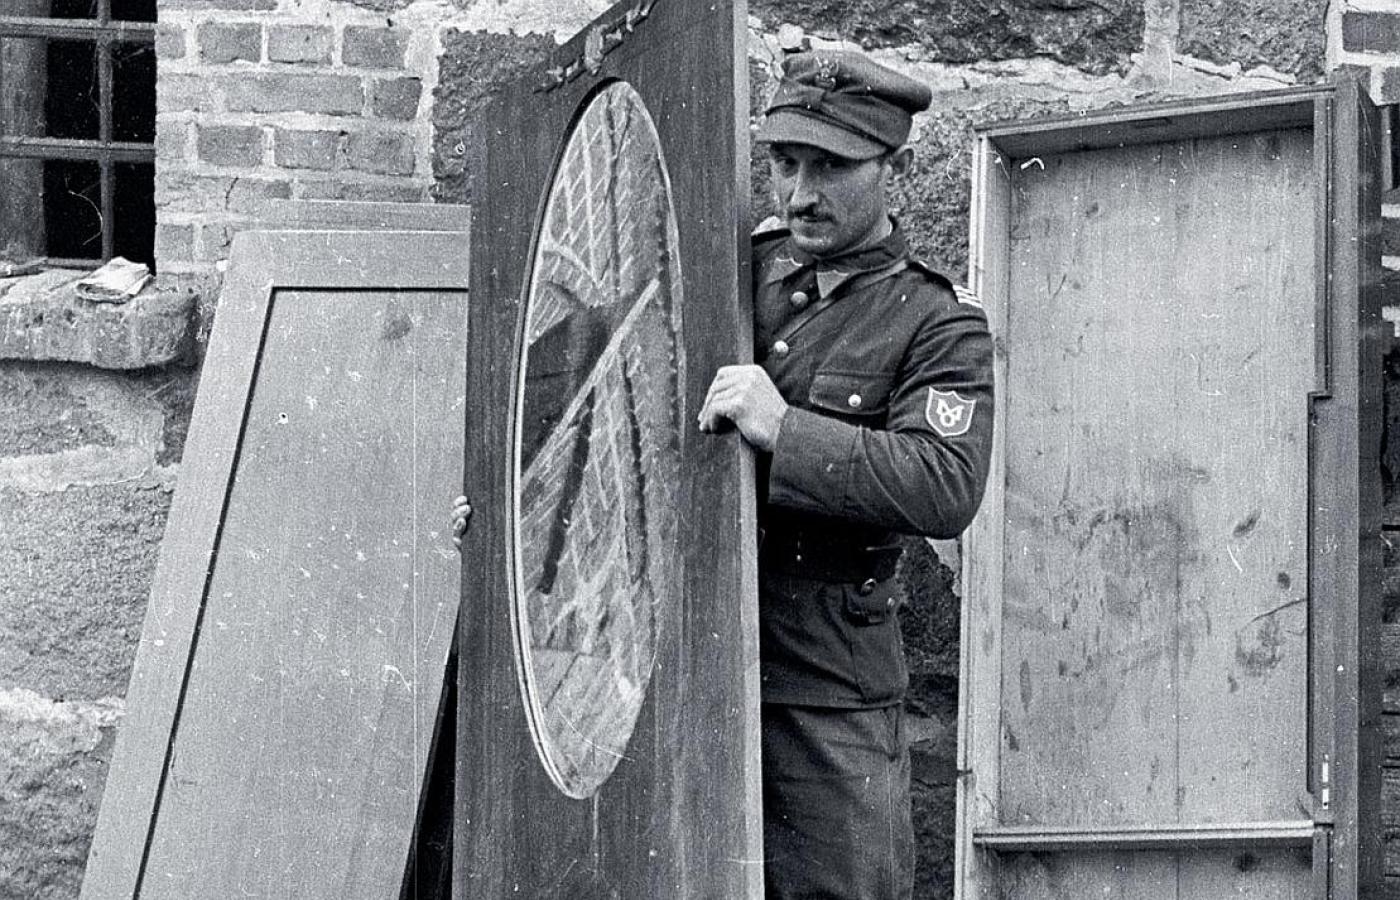 Konfiskata lustra pochodzącego z szabru, powiat sochaczewski, wrzesień 1947 r.